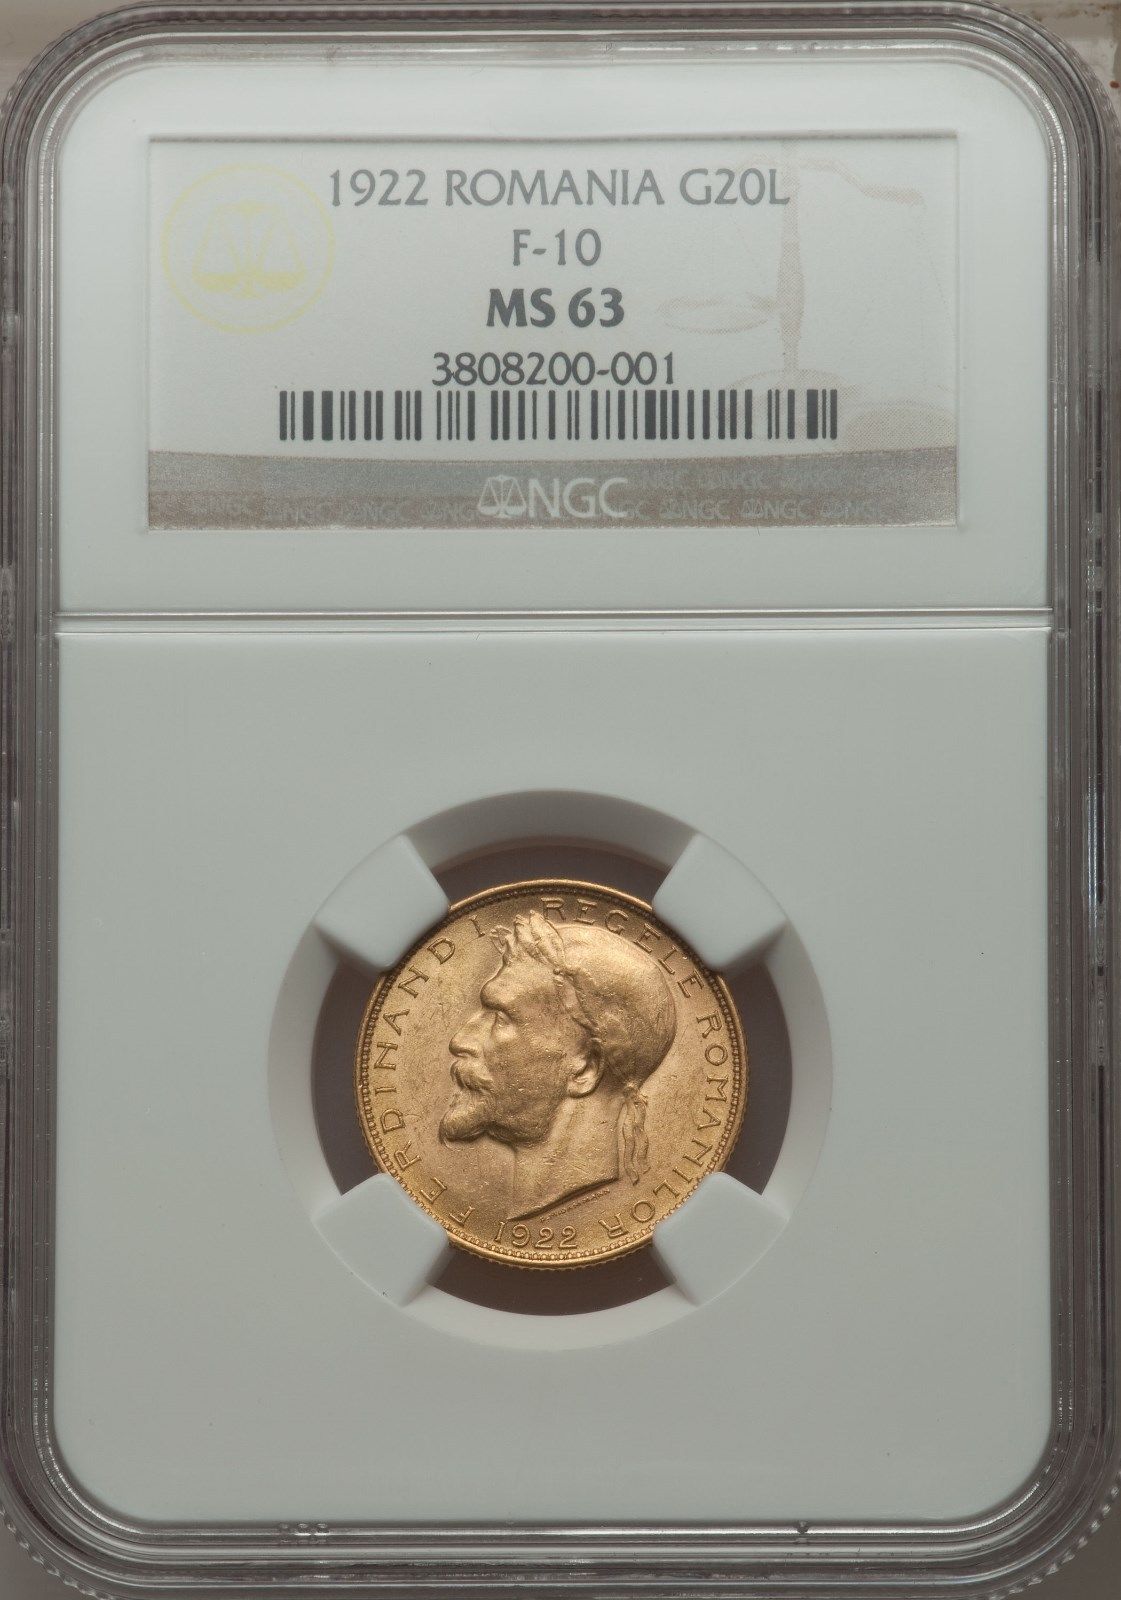 Romania 1922 20Lei NGC MS63 very rare gold coin